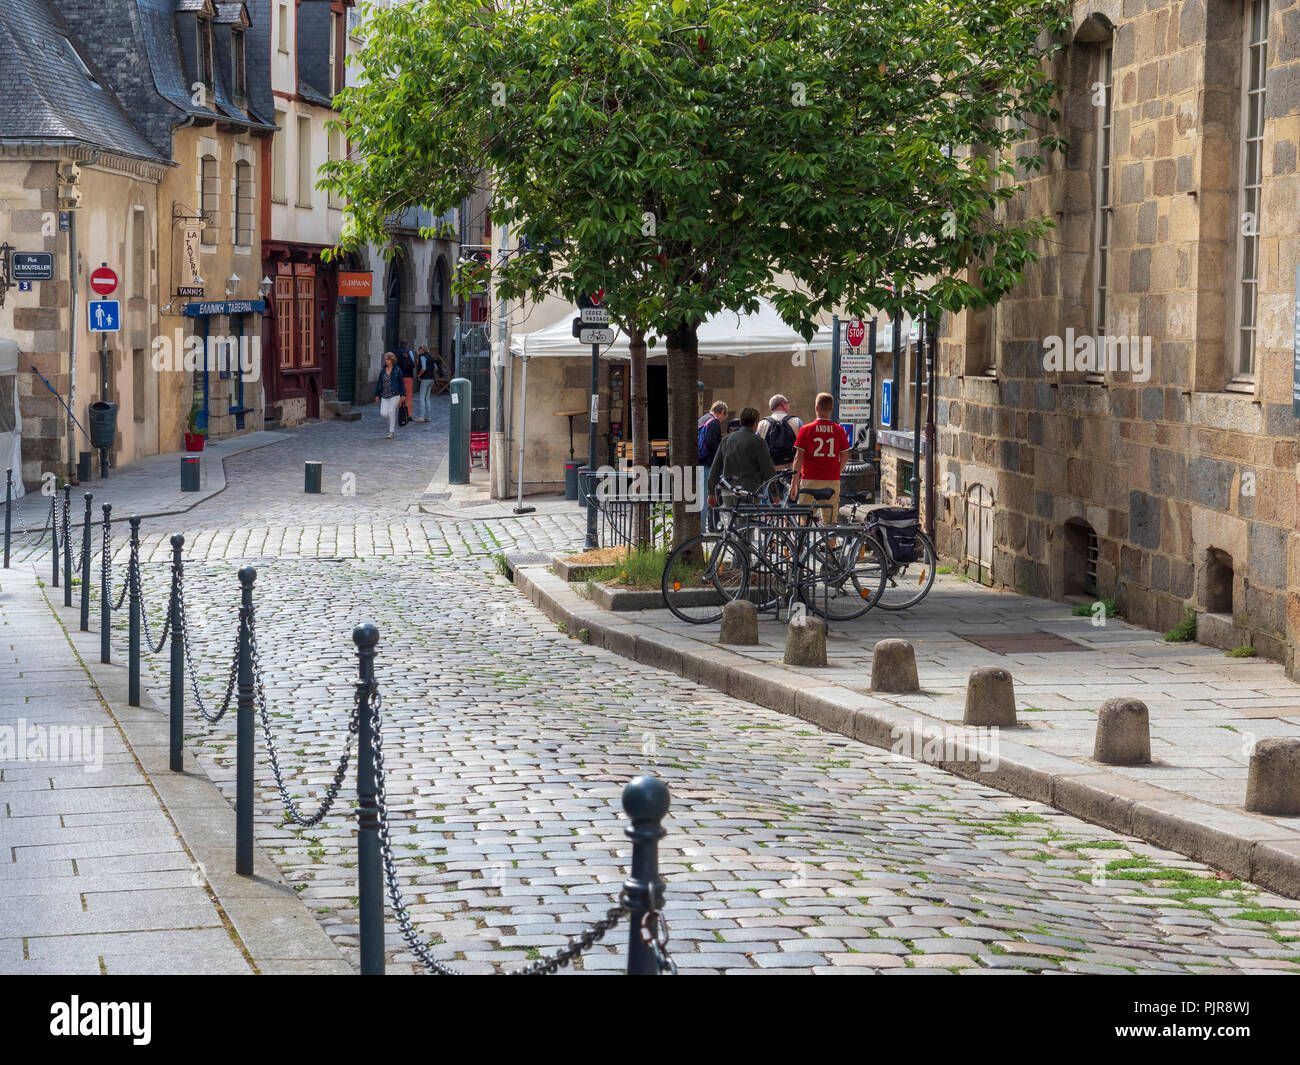 Maisons à colombages et ses rues pavées, vieux Rennes, France. Banque D'Images